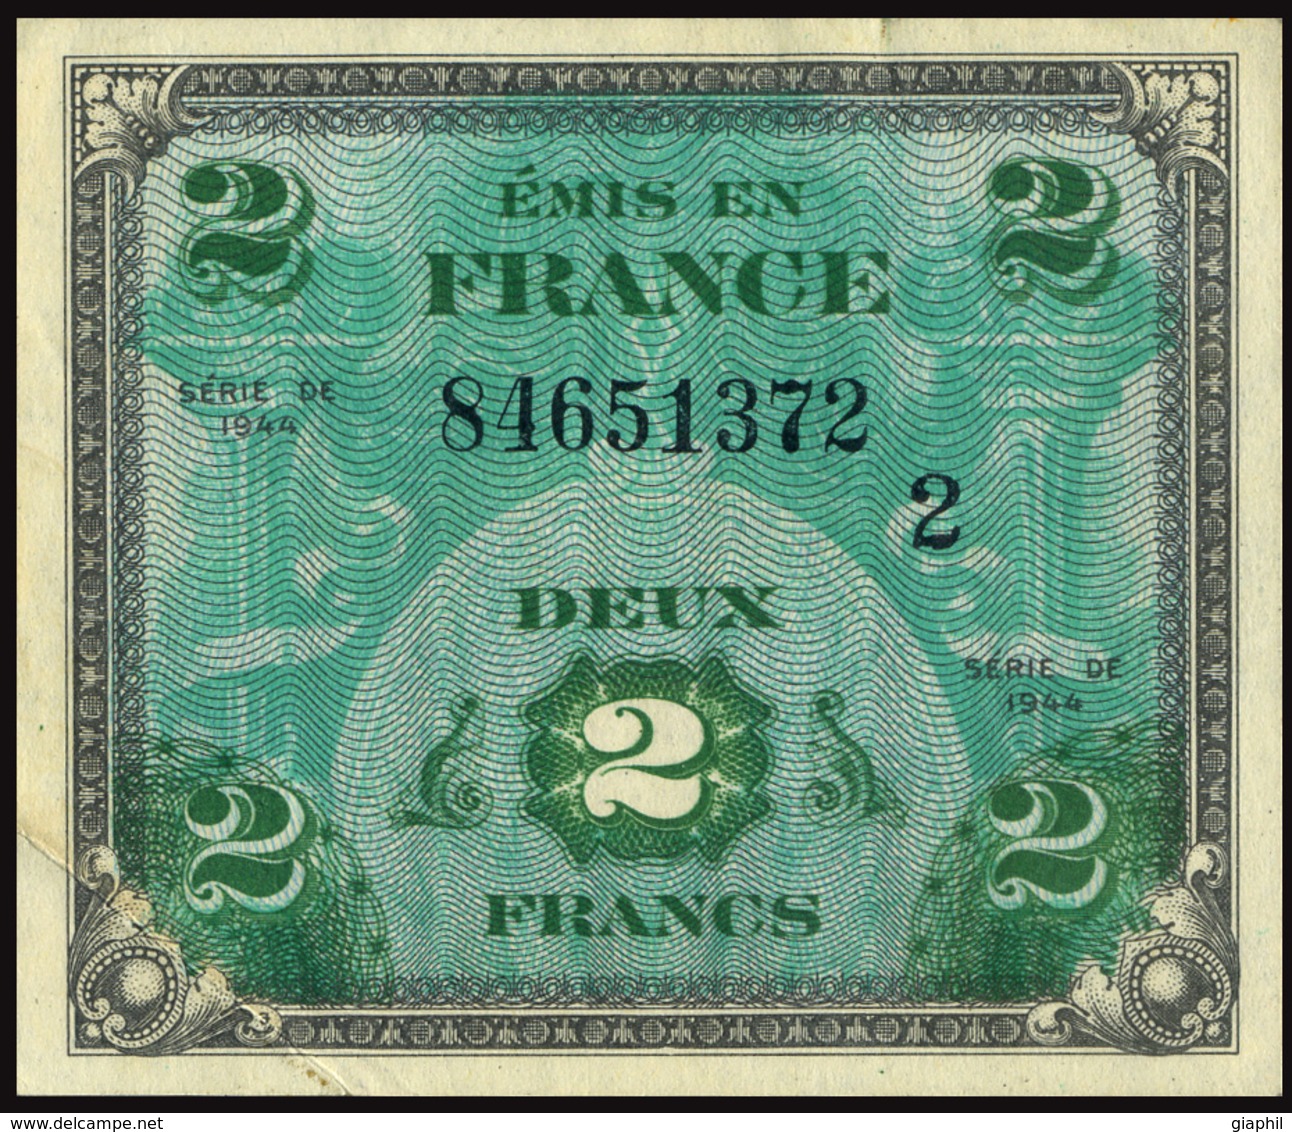 FRANCE 1944 DRAPEAU/FRANCE - 2 FRANCS OFFER!!! - 1944 Vlag/Frankrijk